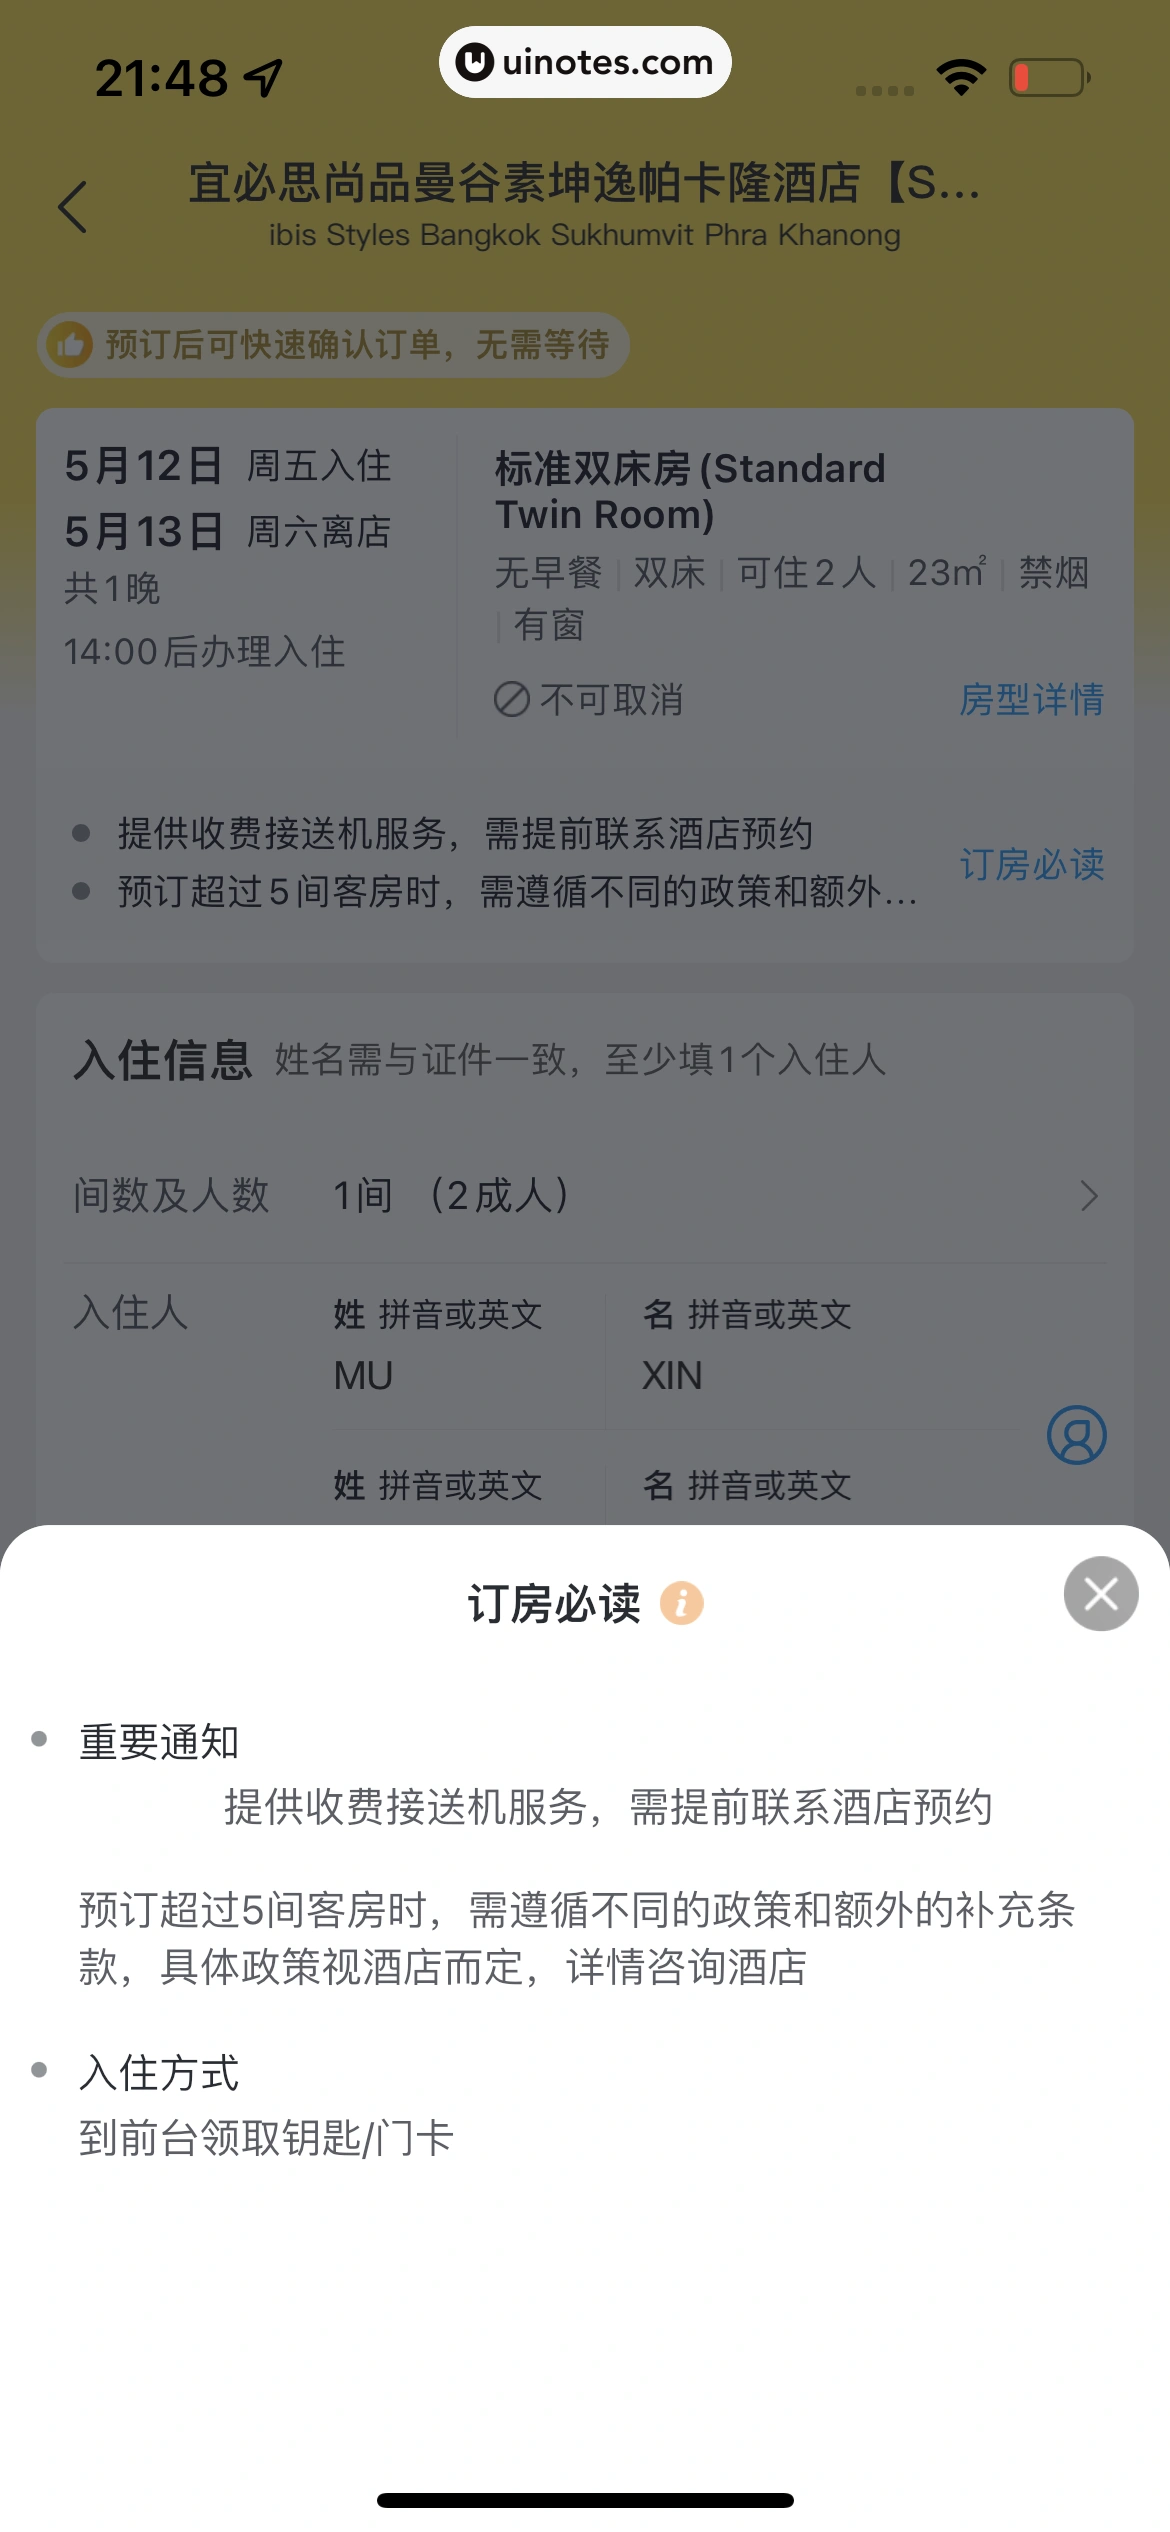 飞猪旅行 App 截图 267 - UI Notes